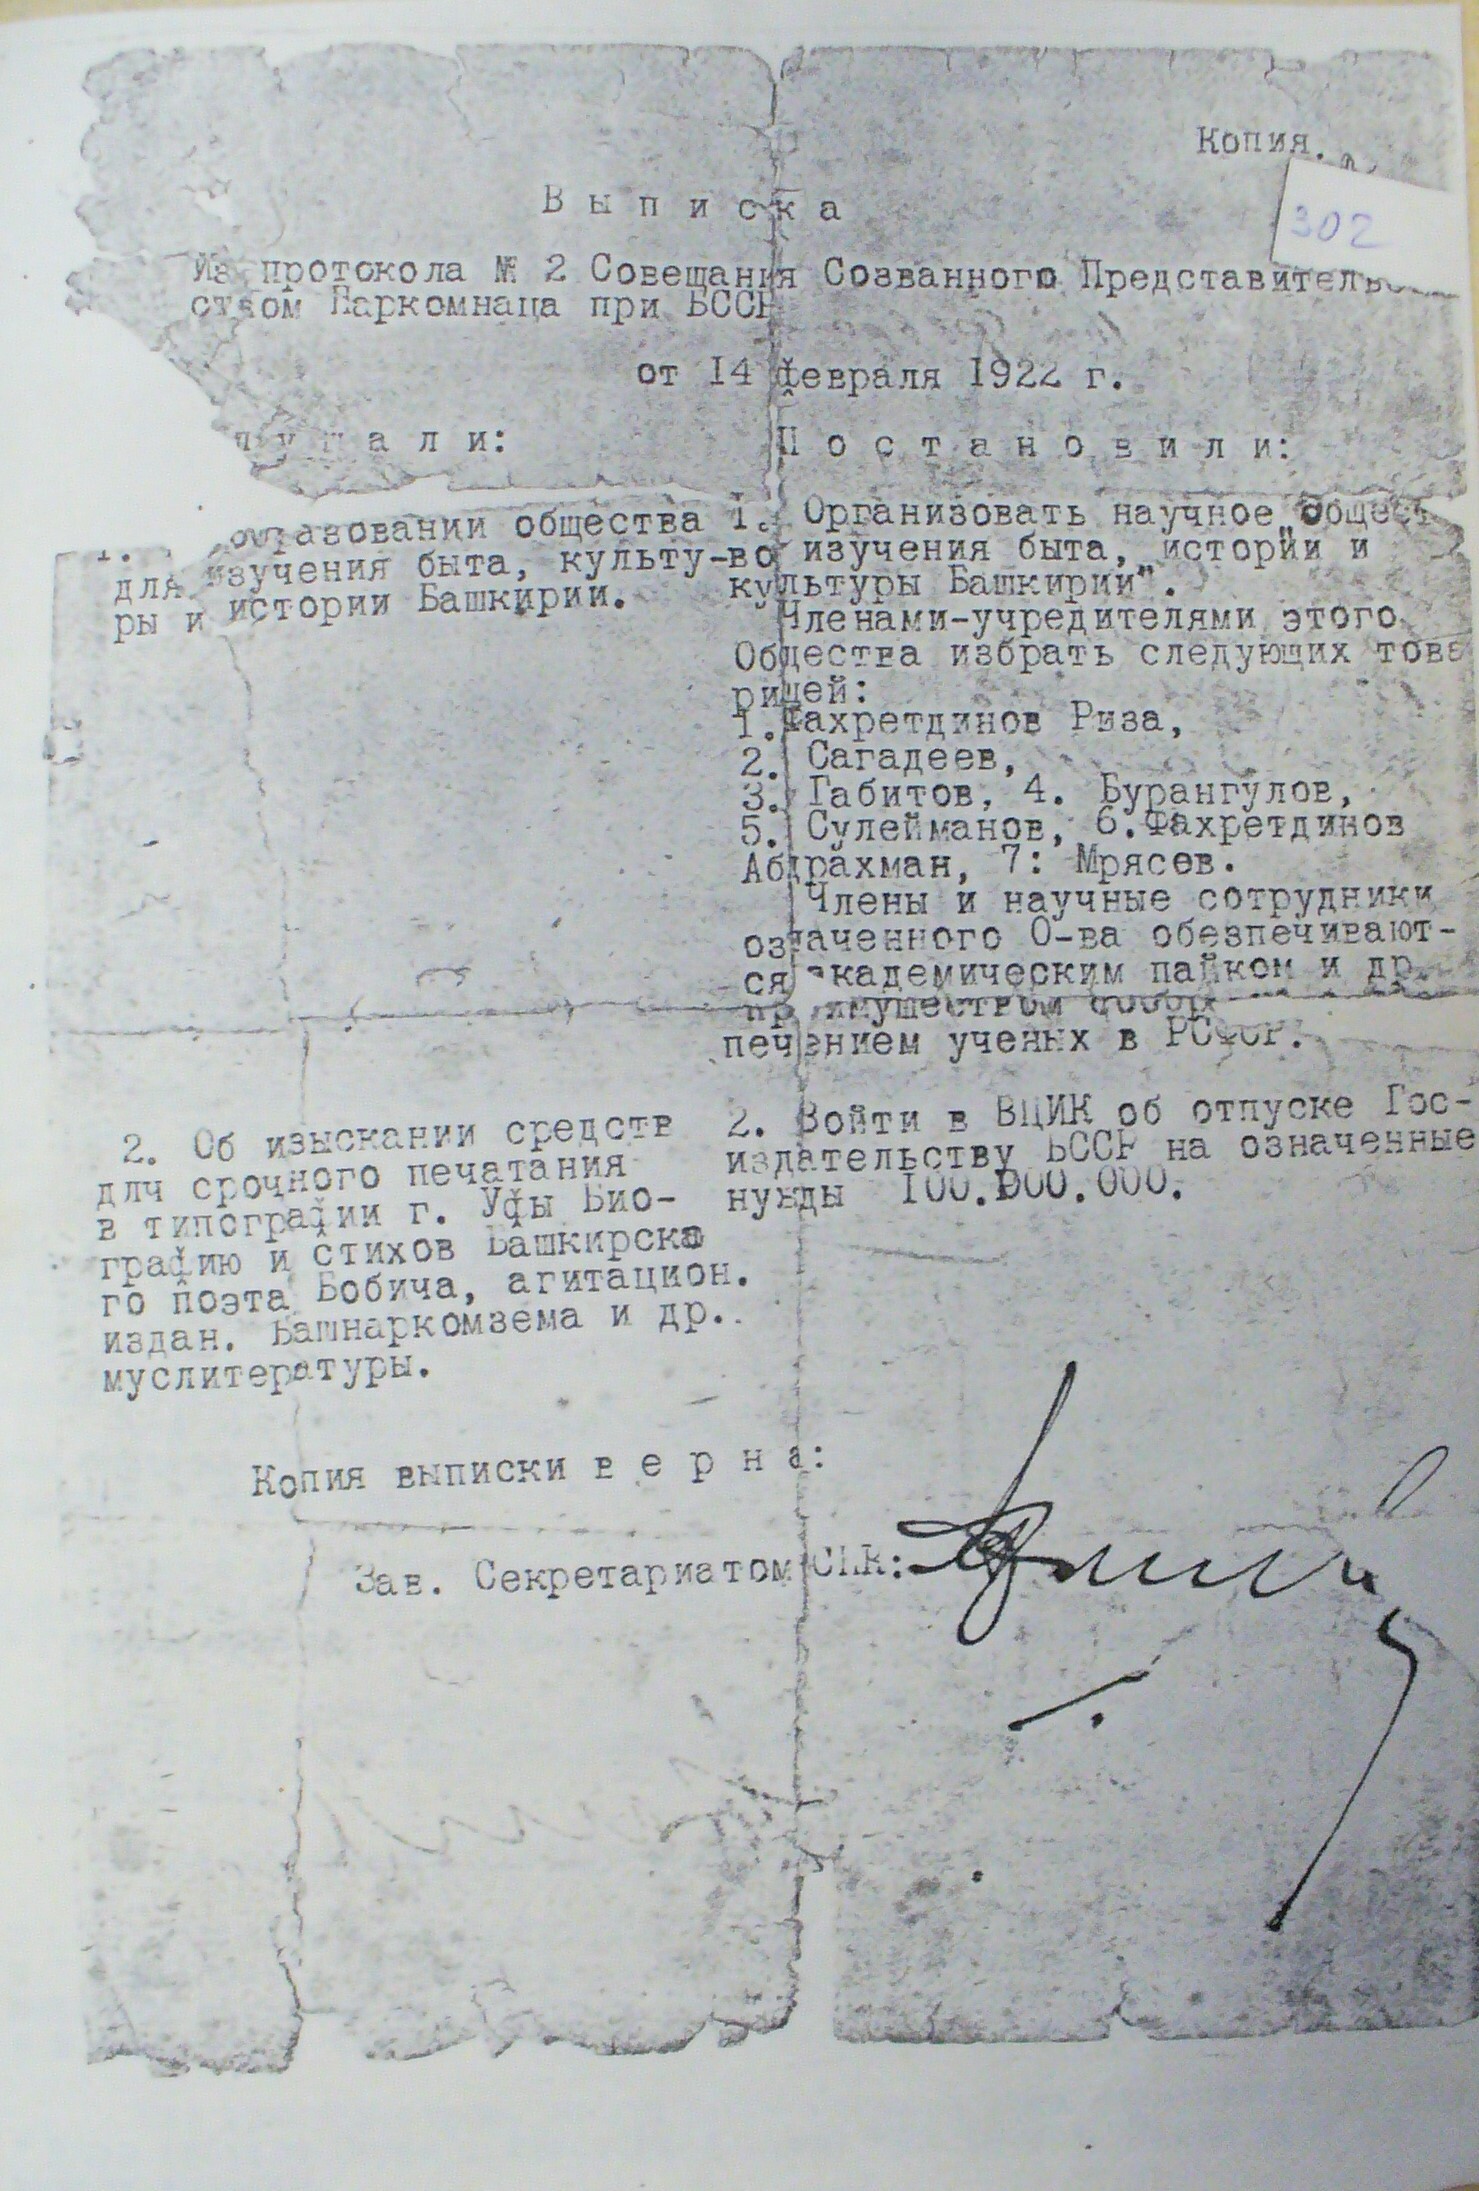 Документ об организации научного общества  по изучению быта, истории и культуры Башкирии. 14 февраля, 1922 г.